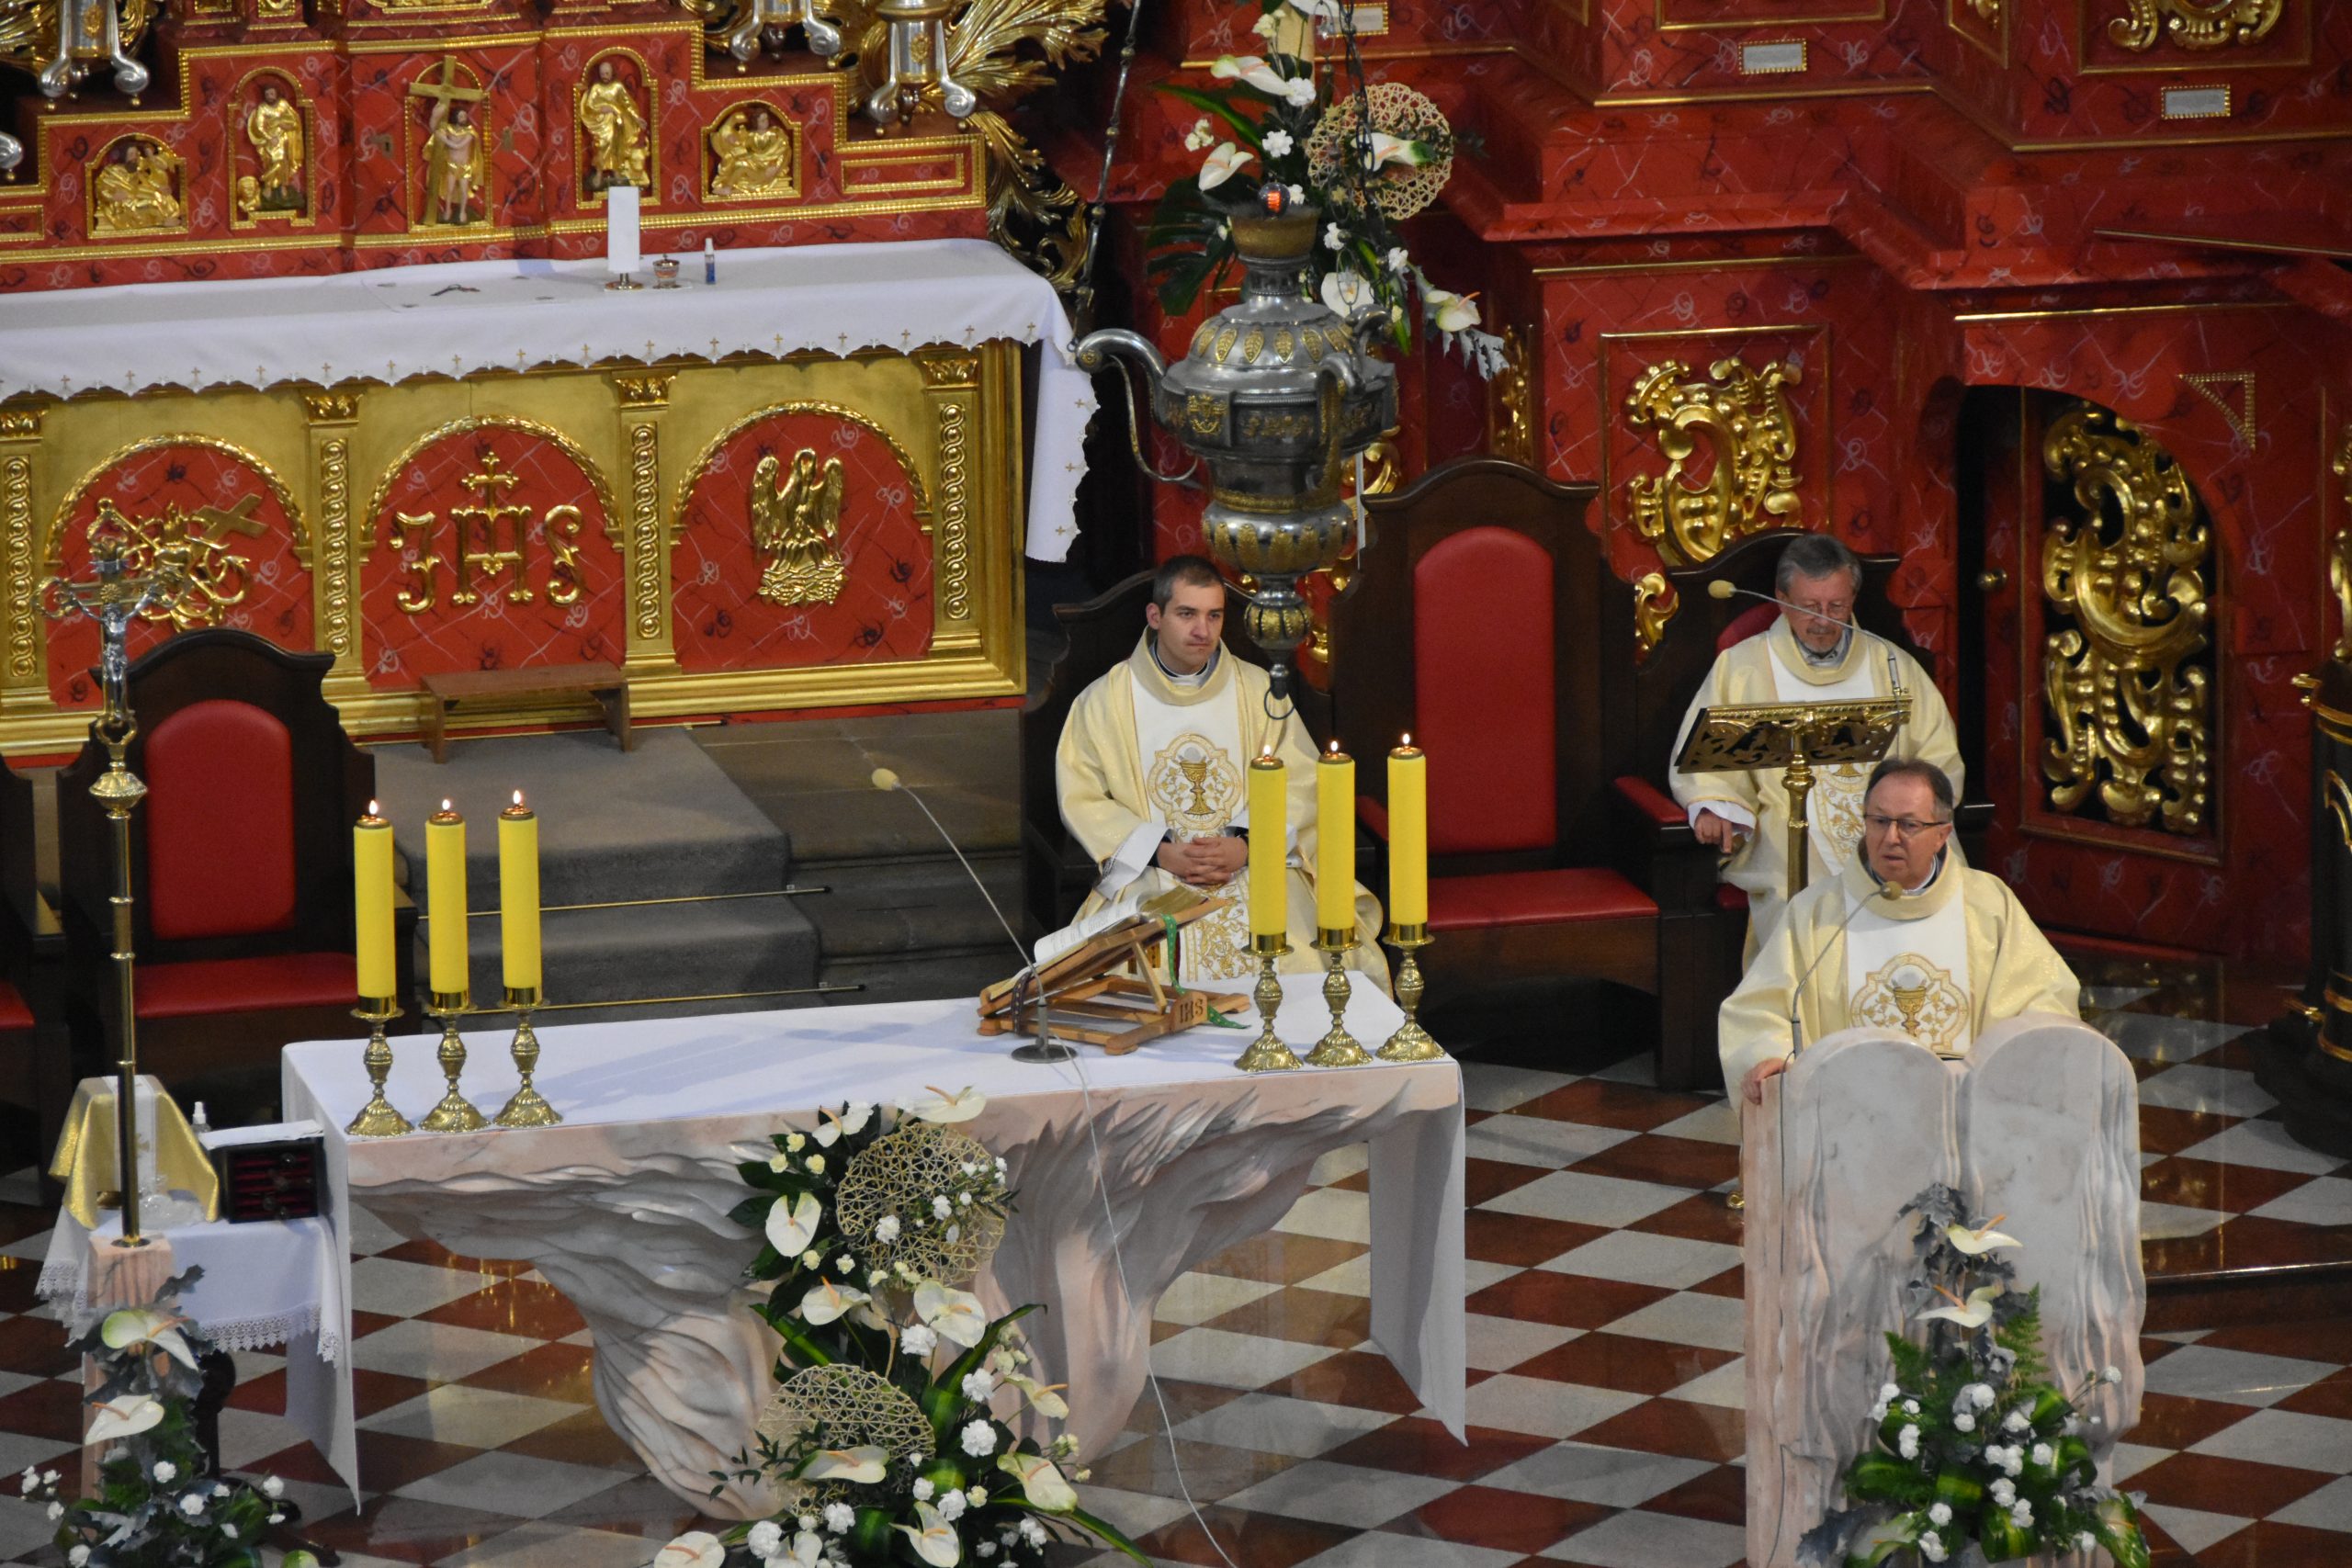 Stojący przy mównicy ksiądz ubrany w białą szatę ze złotymi ornamentami odprawia mszę świętą w intencji długoletnich małżeństw